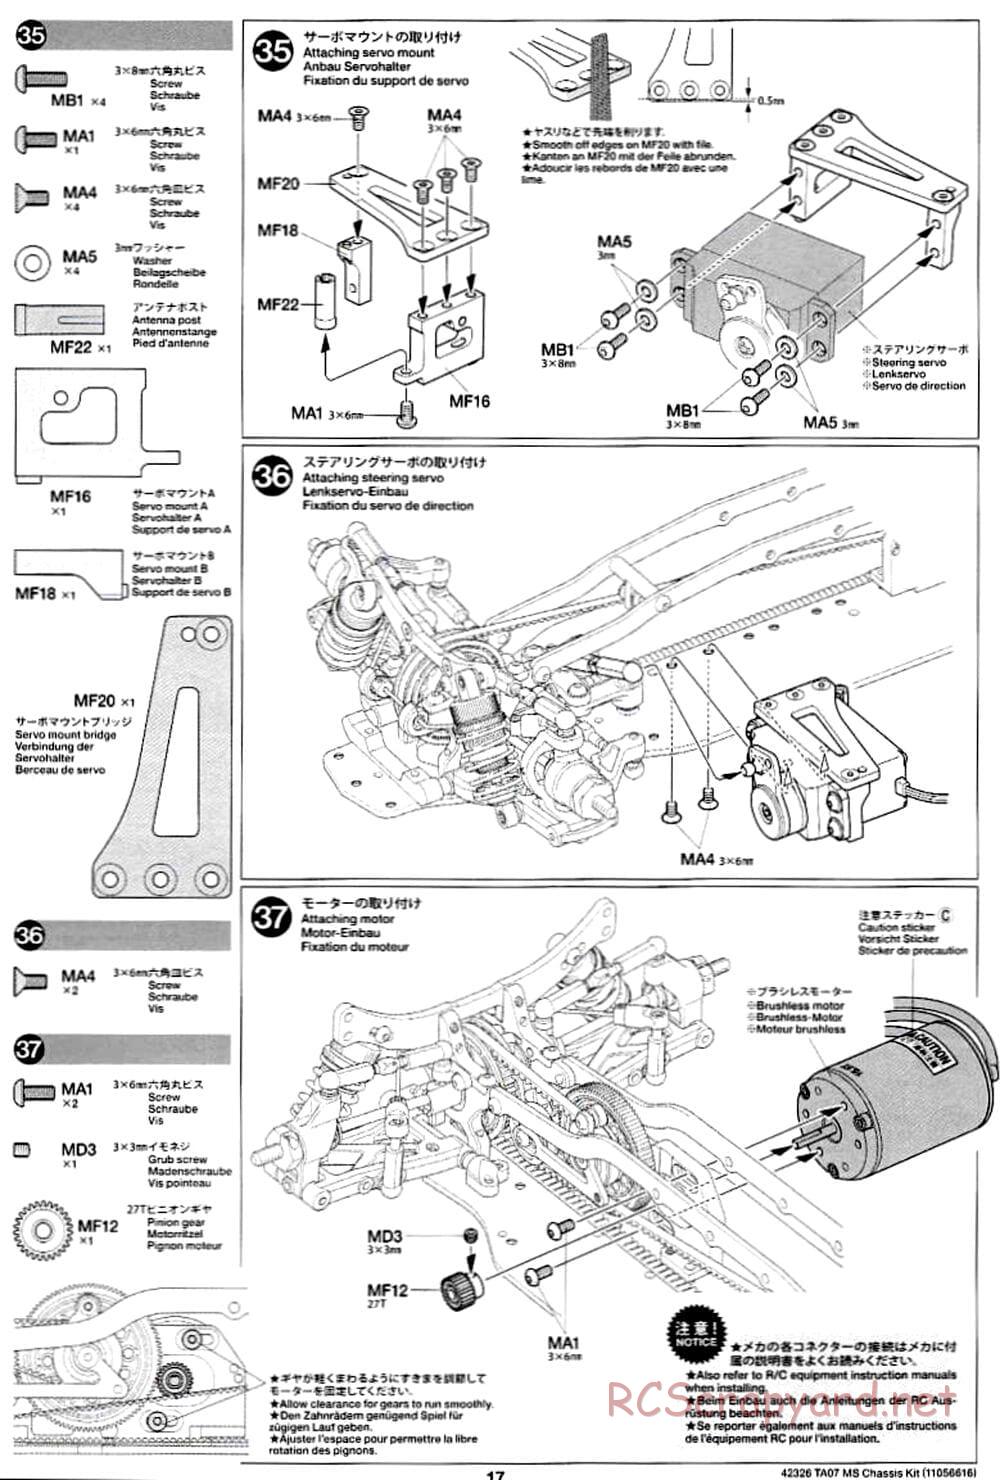 Tamiya - TA07 MS Chassis - Manual - Page 17